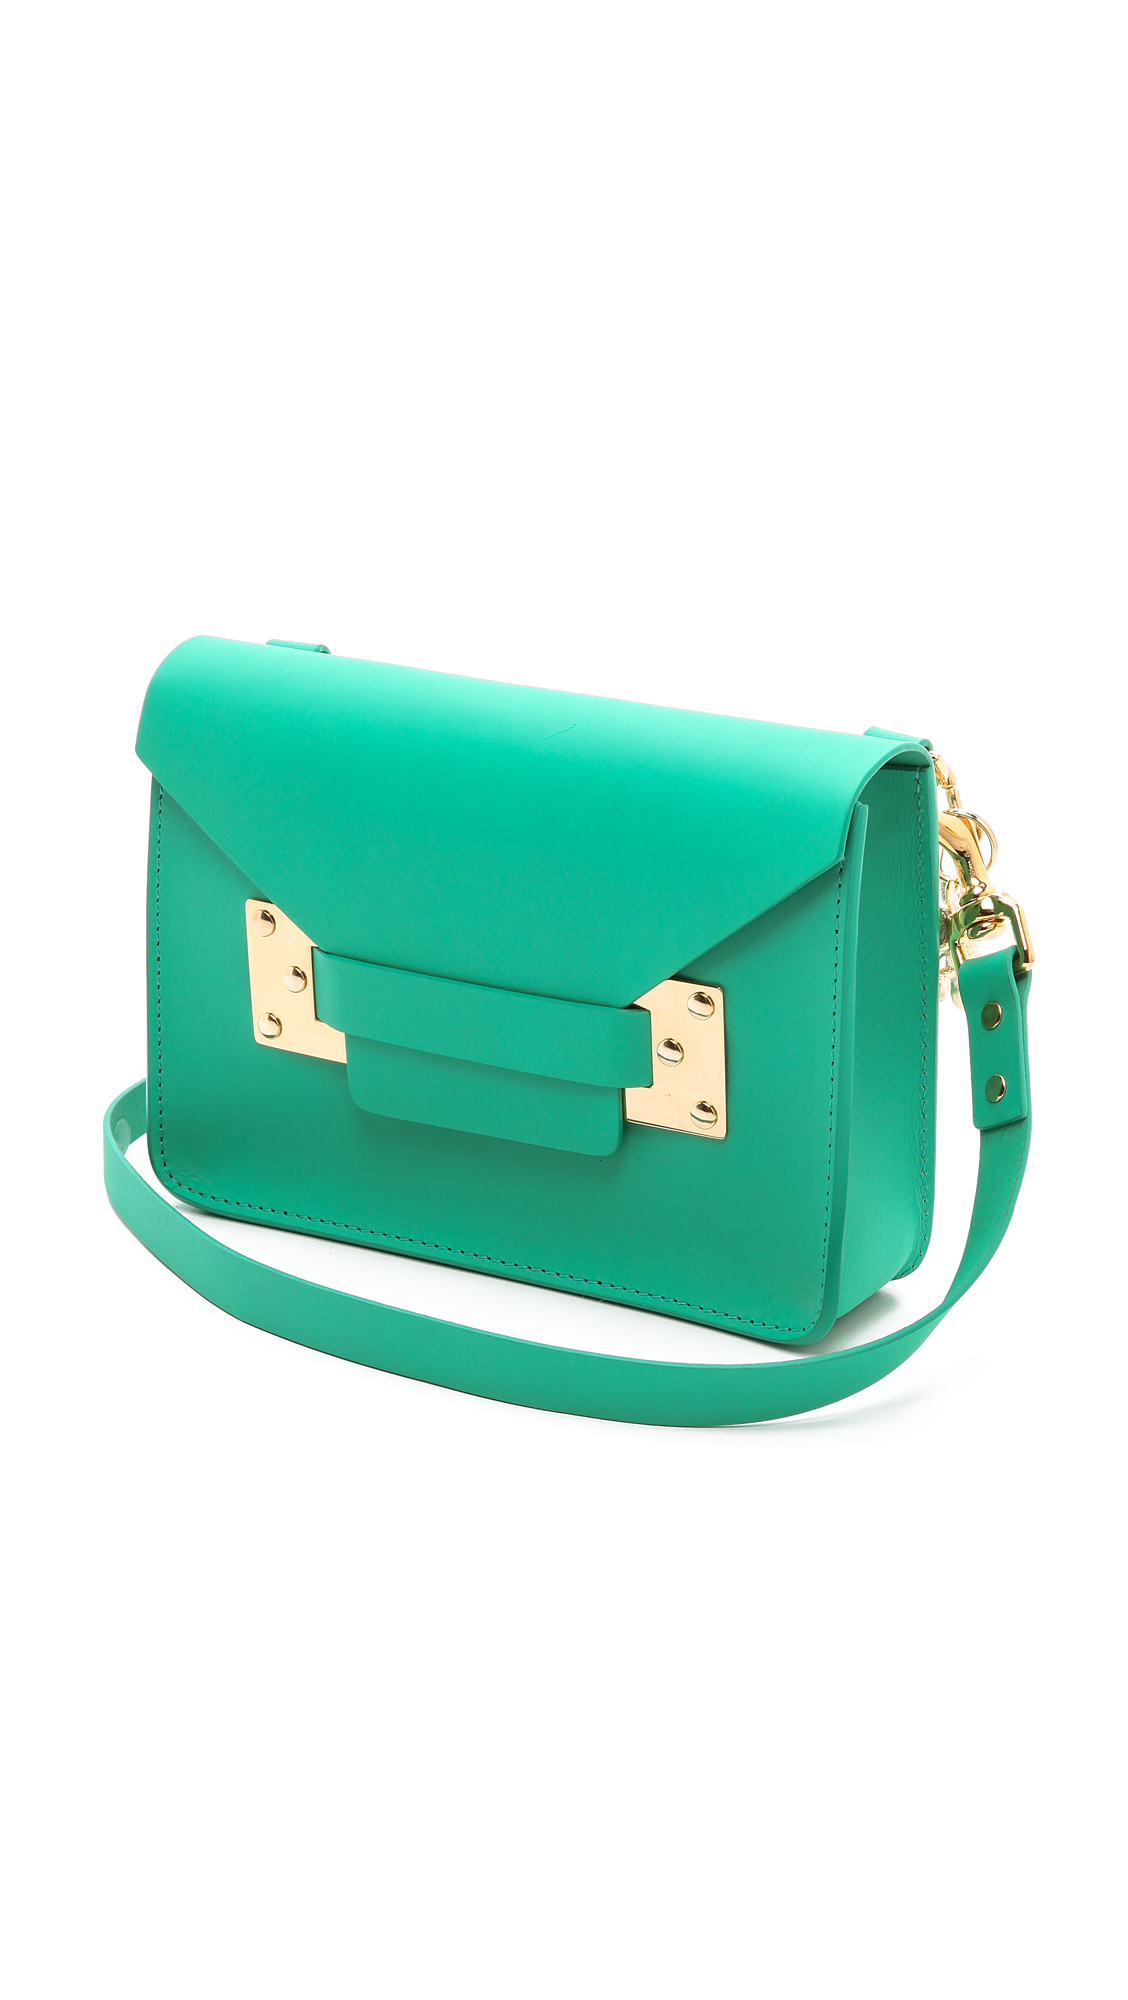 Lyst - Sophie hulme Mini Envelope Bag in Green